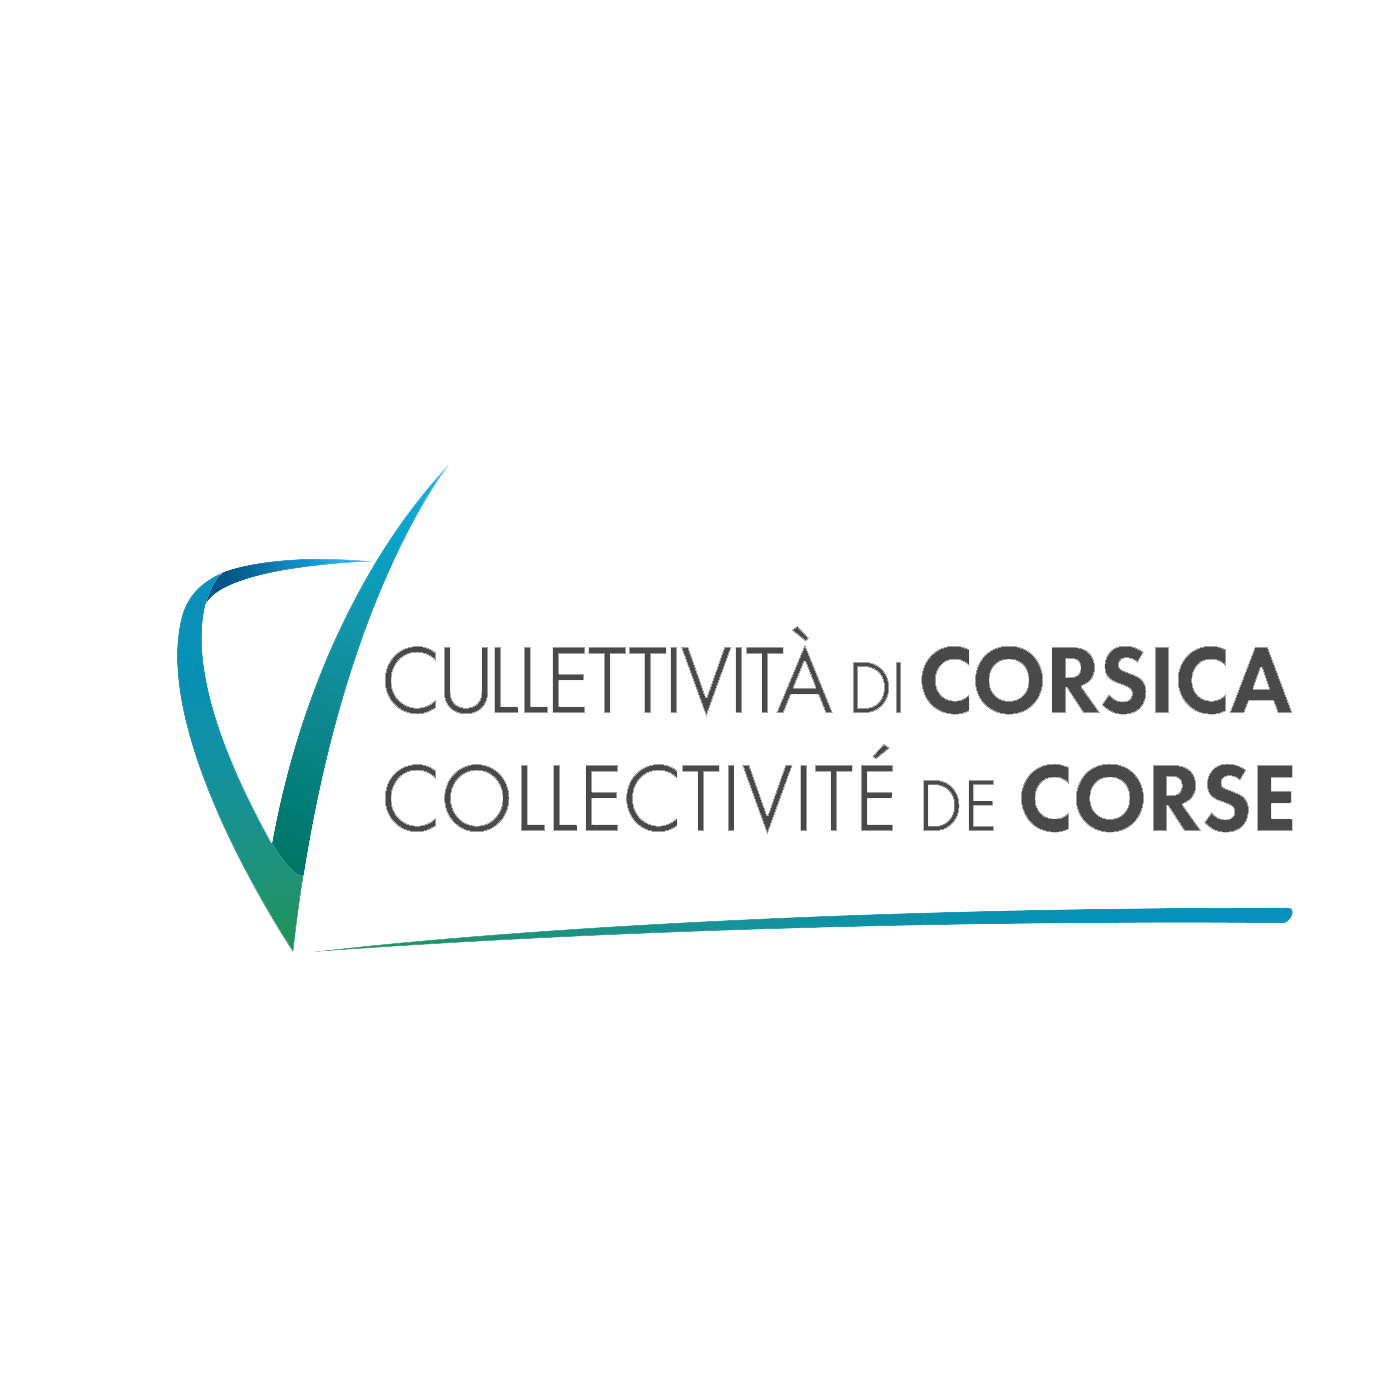 Collectivité de Corse - Cullectività di Corsica